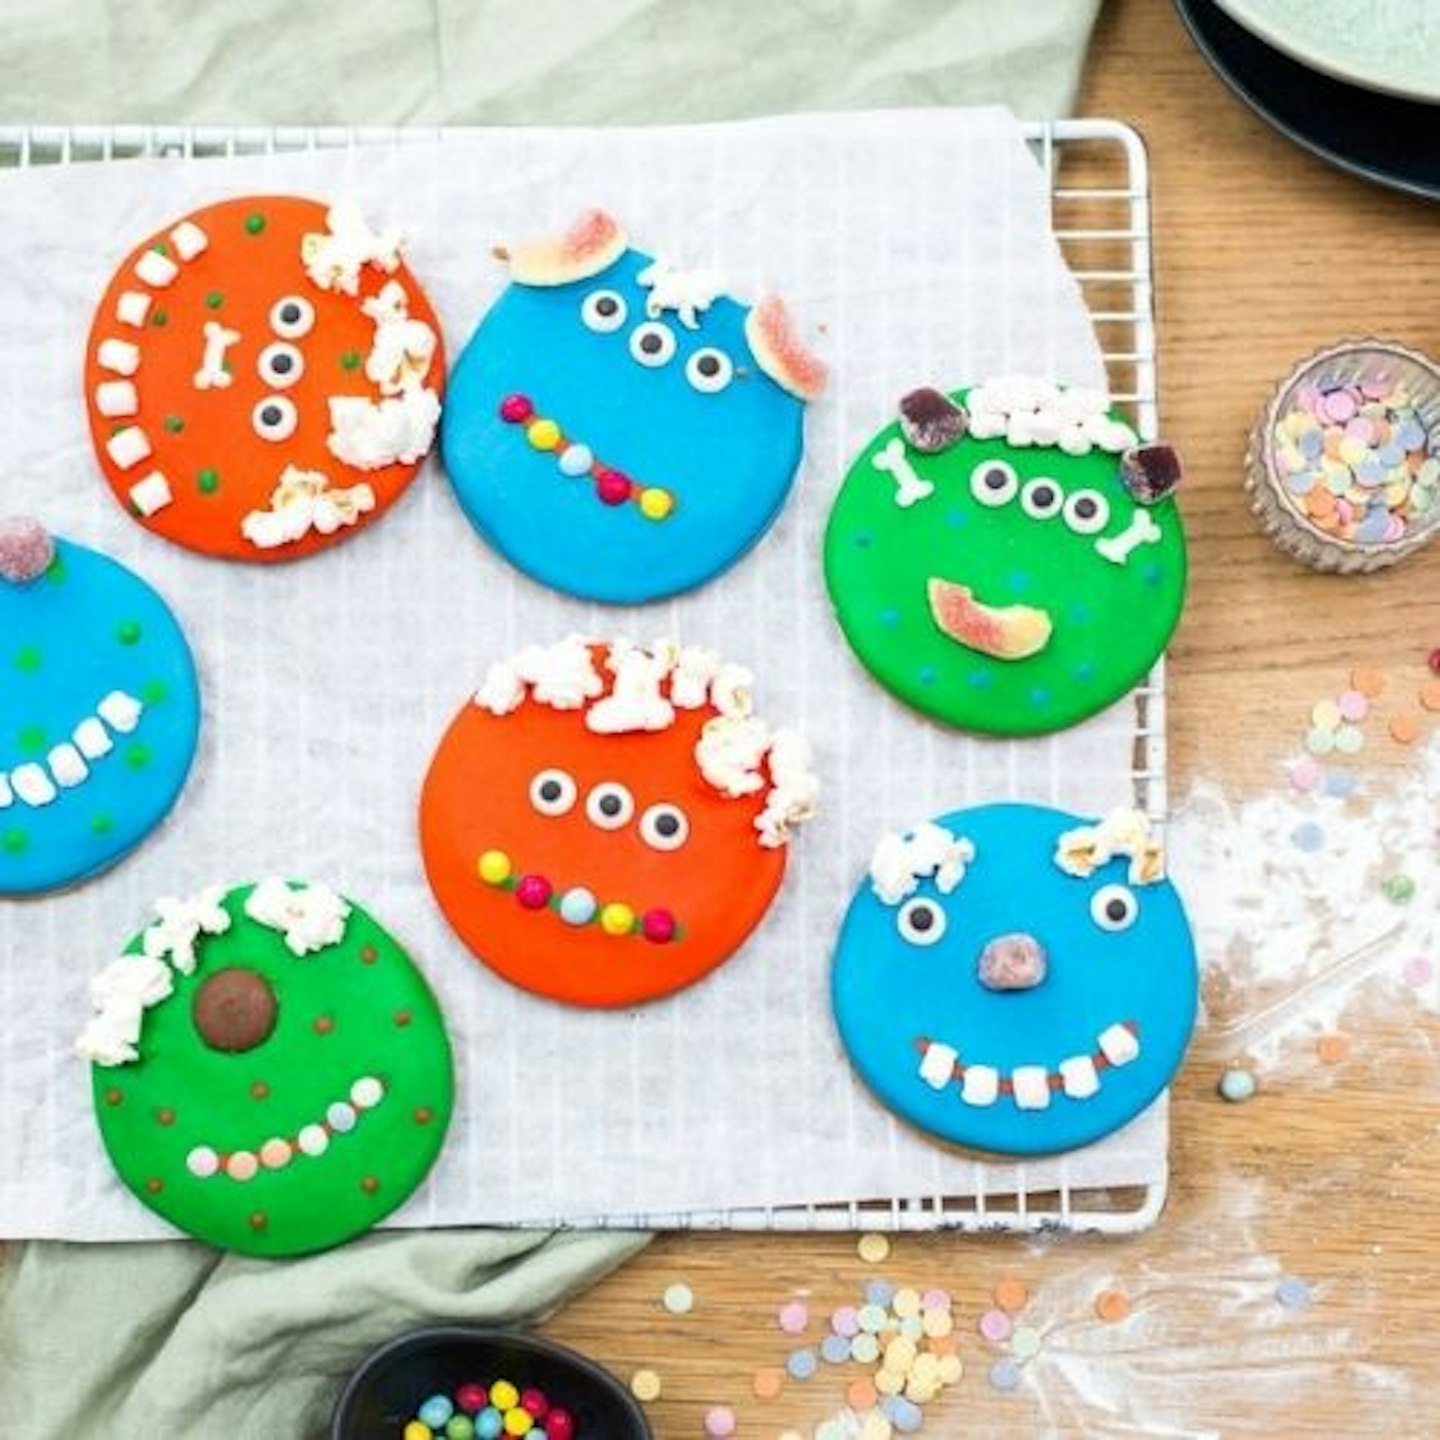 Children's Monster Bake And Craft Kit